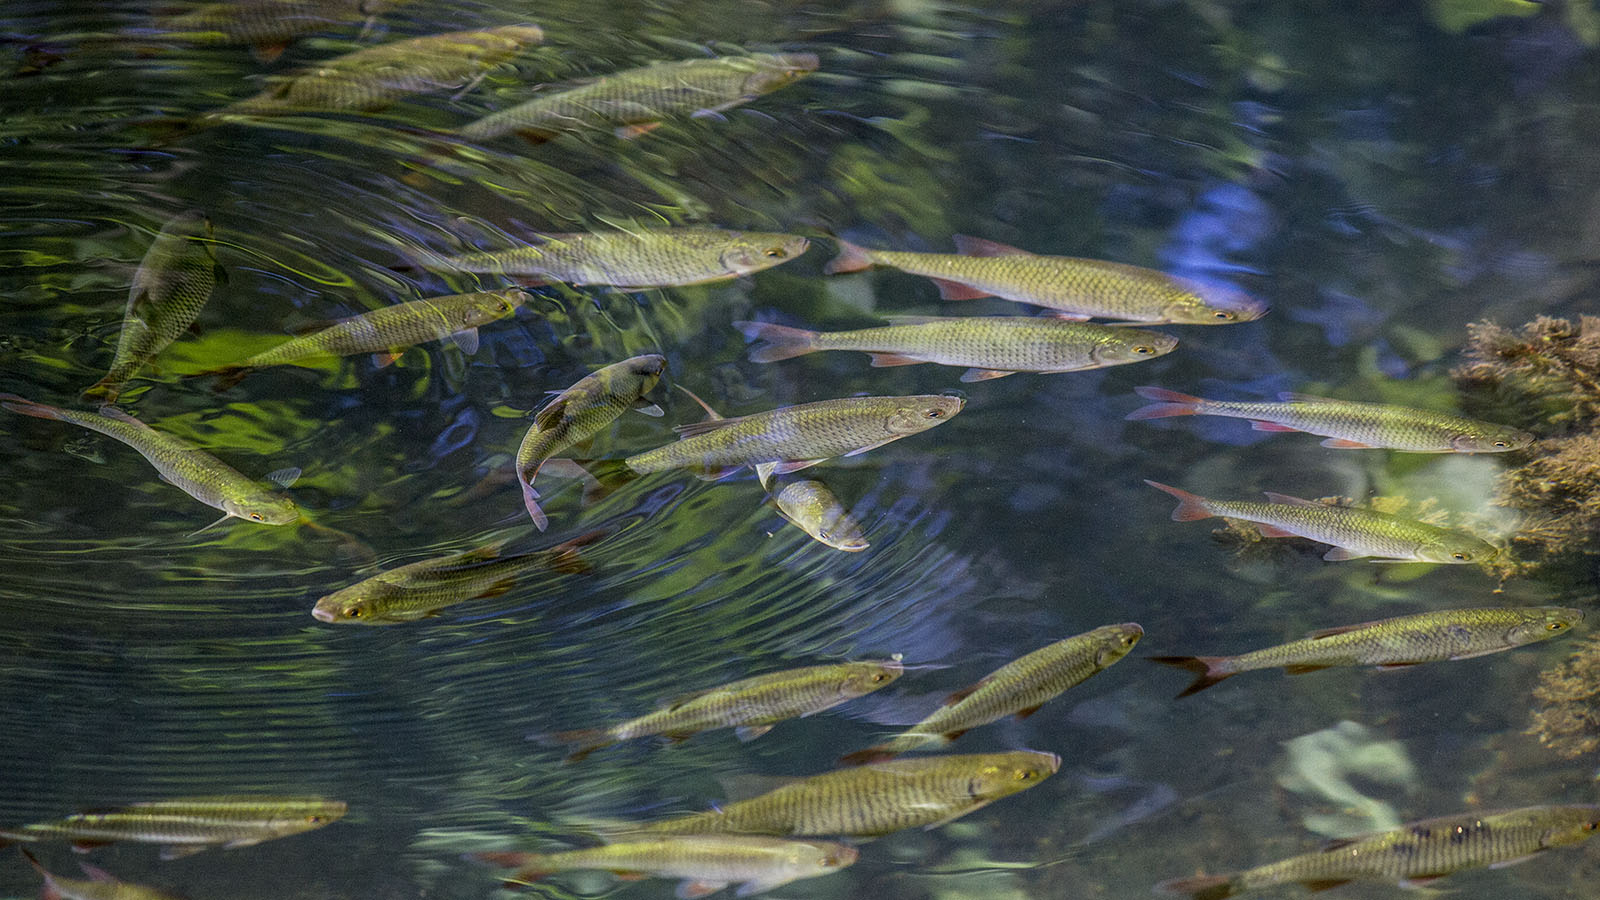 Die einheimische Rotfeder ist eine typische Fischart der Stillgewässer